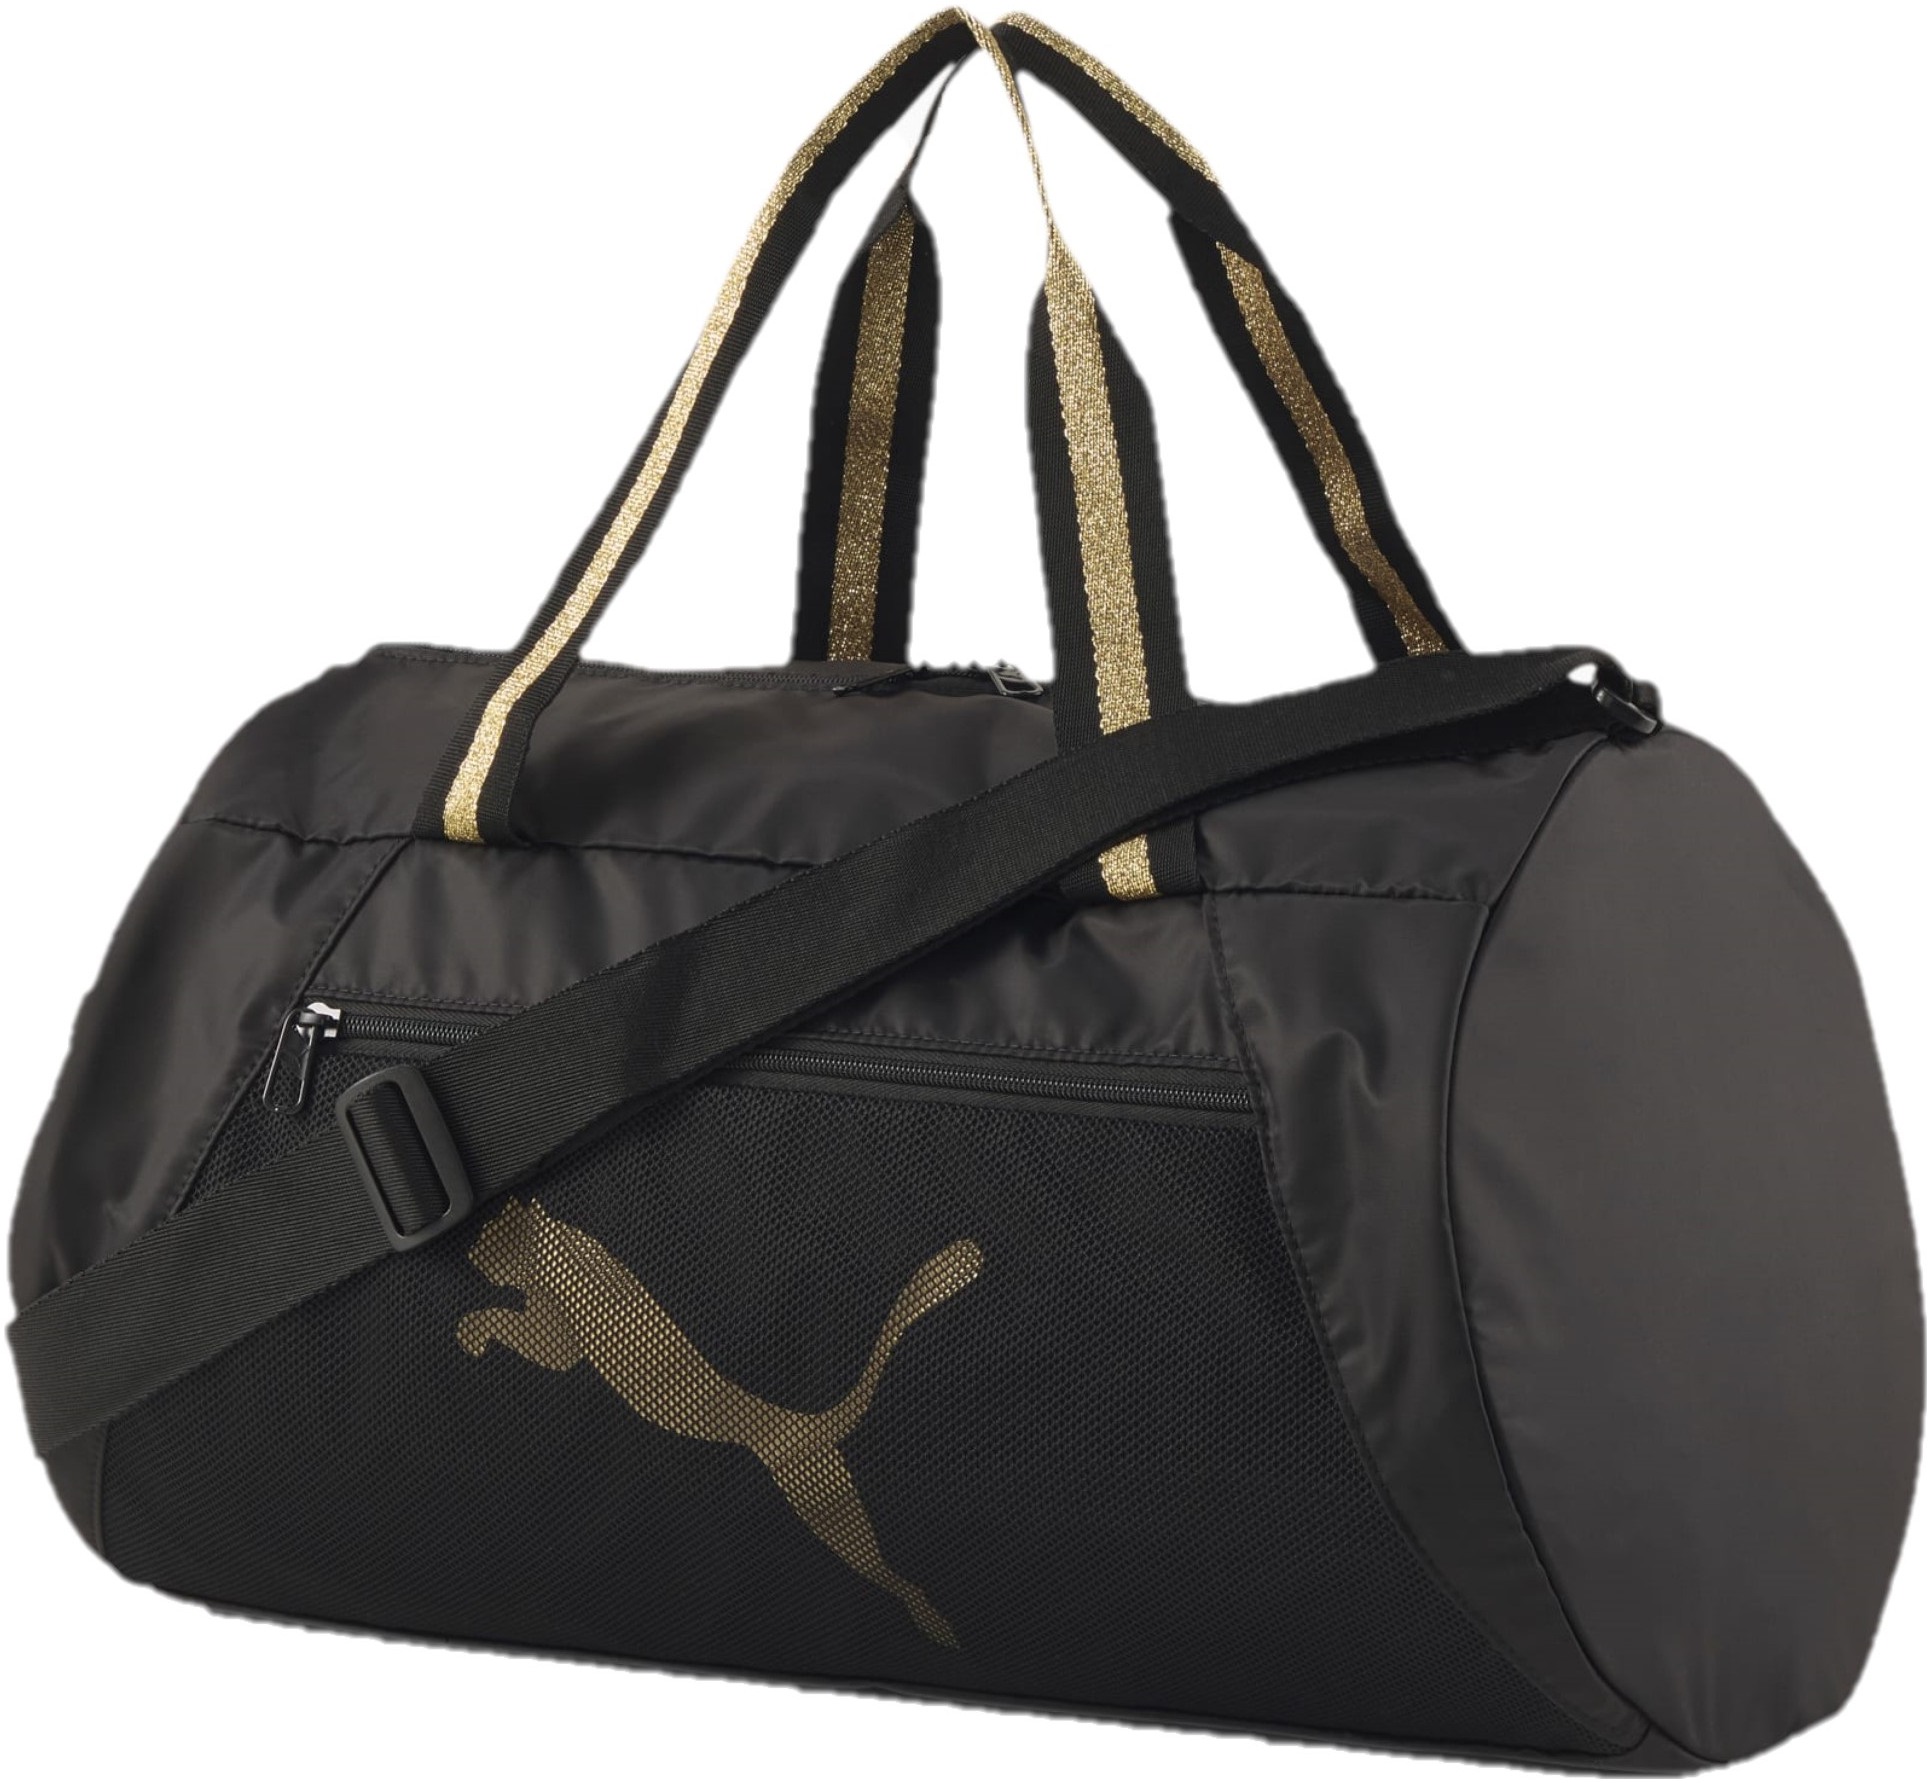 Puma Hand Purse | Purses, Lady dior bag, Handbag